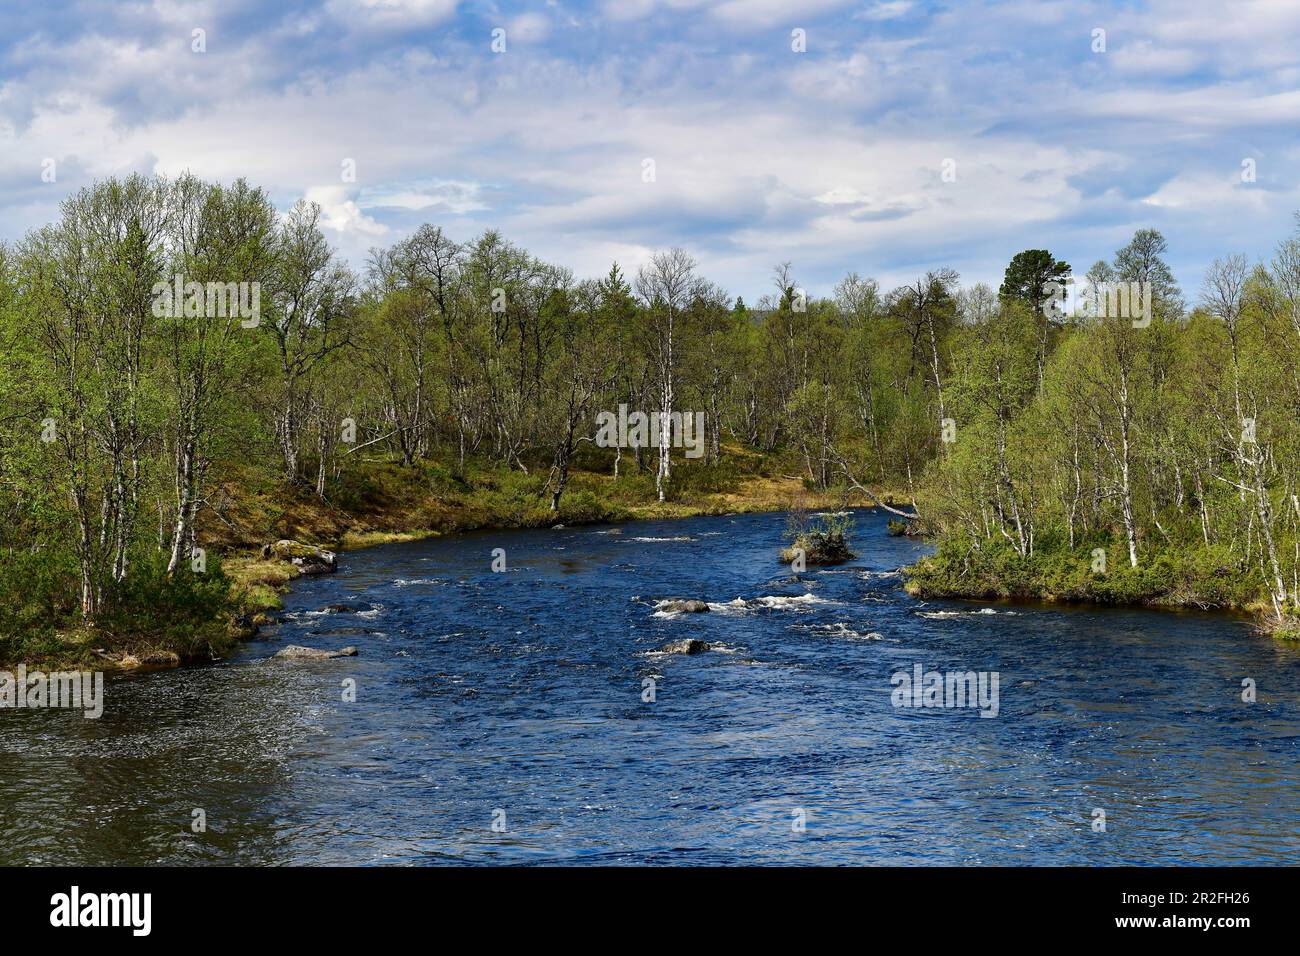 Piccolo torrente nella foresta di betulla, Rätan, provincia di Härjedalen, Svezia Foto Stock